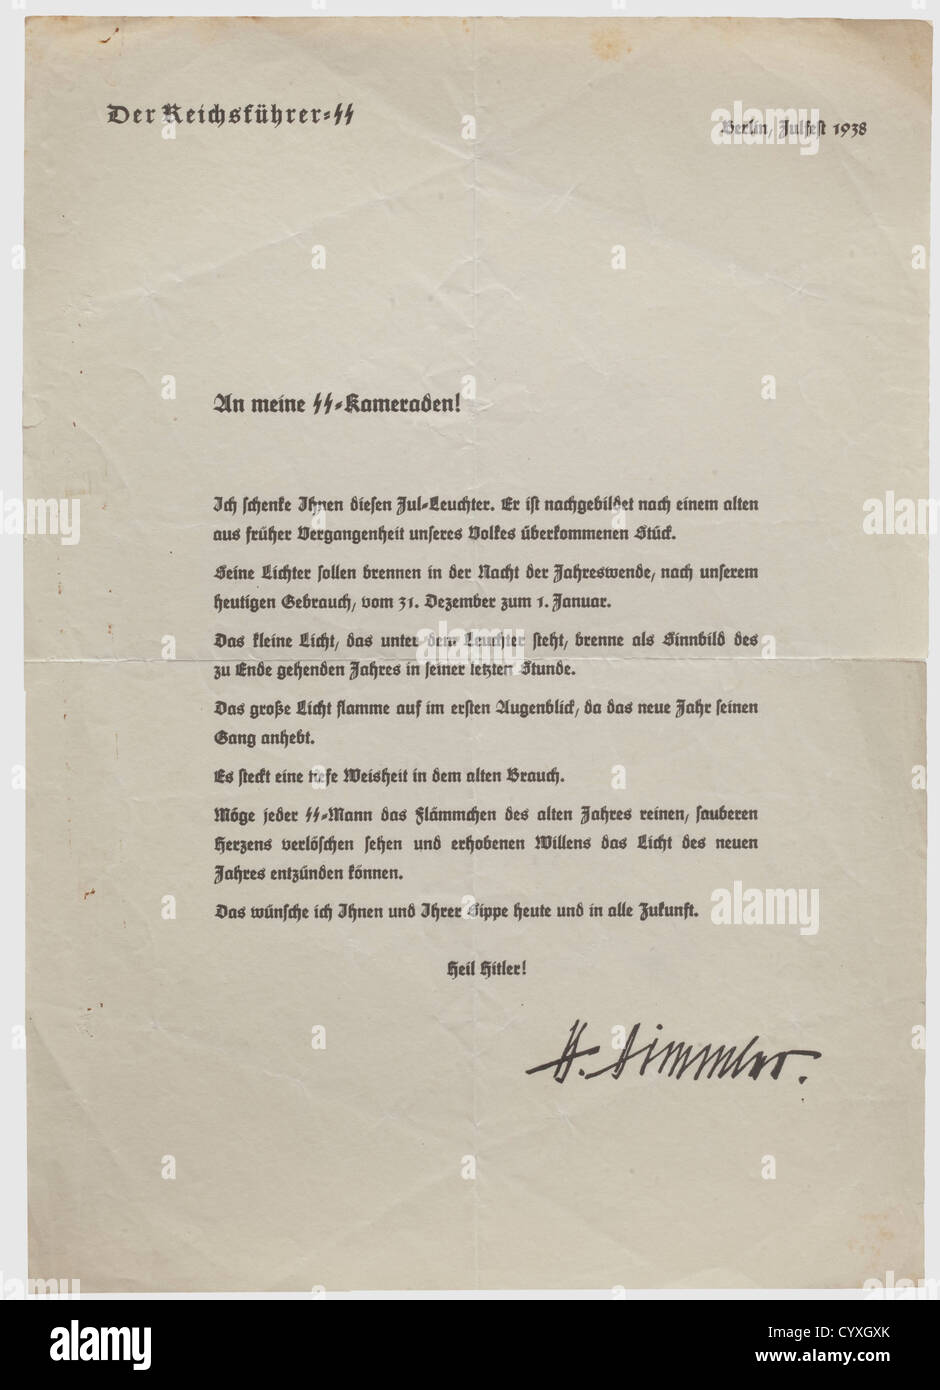 Una lettera di presentazione per un candelabro yule 1938,Reichsführer SS - Heinrich Himmler UNA lettera sotto forma di certificato per il dono di un 'candelabro yule' che ne descrive l'uso. Con 'Berlin Yulfest 1938' sulla carta intestata e una firma stampata della 'Reichsführer-SS' Heinrich Himmler. Dimensioni 21 x 29.7 cm. Piegato e leggermente increspato. Raro,storico,storico,anni trenta,XX secolo,Waffen-SS,divisione armata delle SS,servizio armato,servizi armati,NS,nazionalsocialismo,nazismo,terzo Reich,Germania,militare,militarismo,utensil,piec,diritti aggiuntivi-clearences-non disponibili Foto Stock